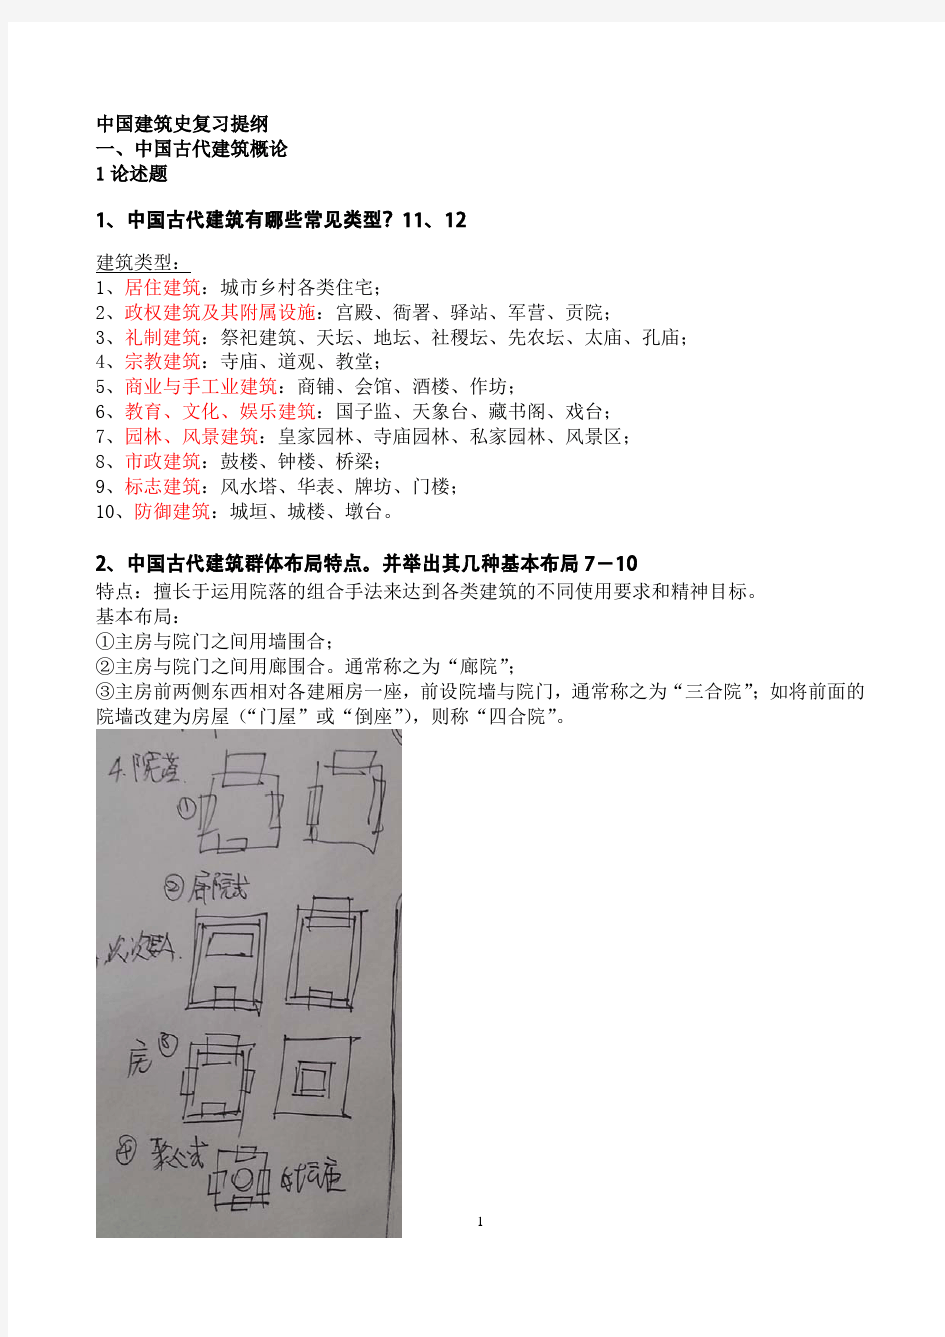 华南理工大学中国建筑史复习提纲(附提纲相关文字图片。考研或期末考试适用个人梳理)